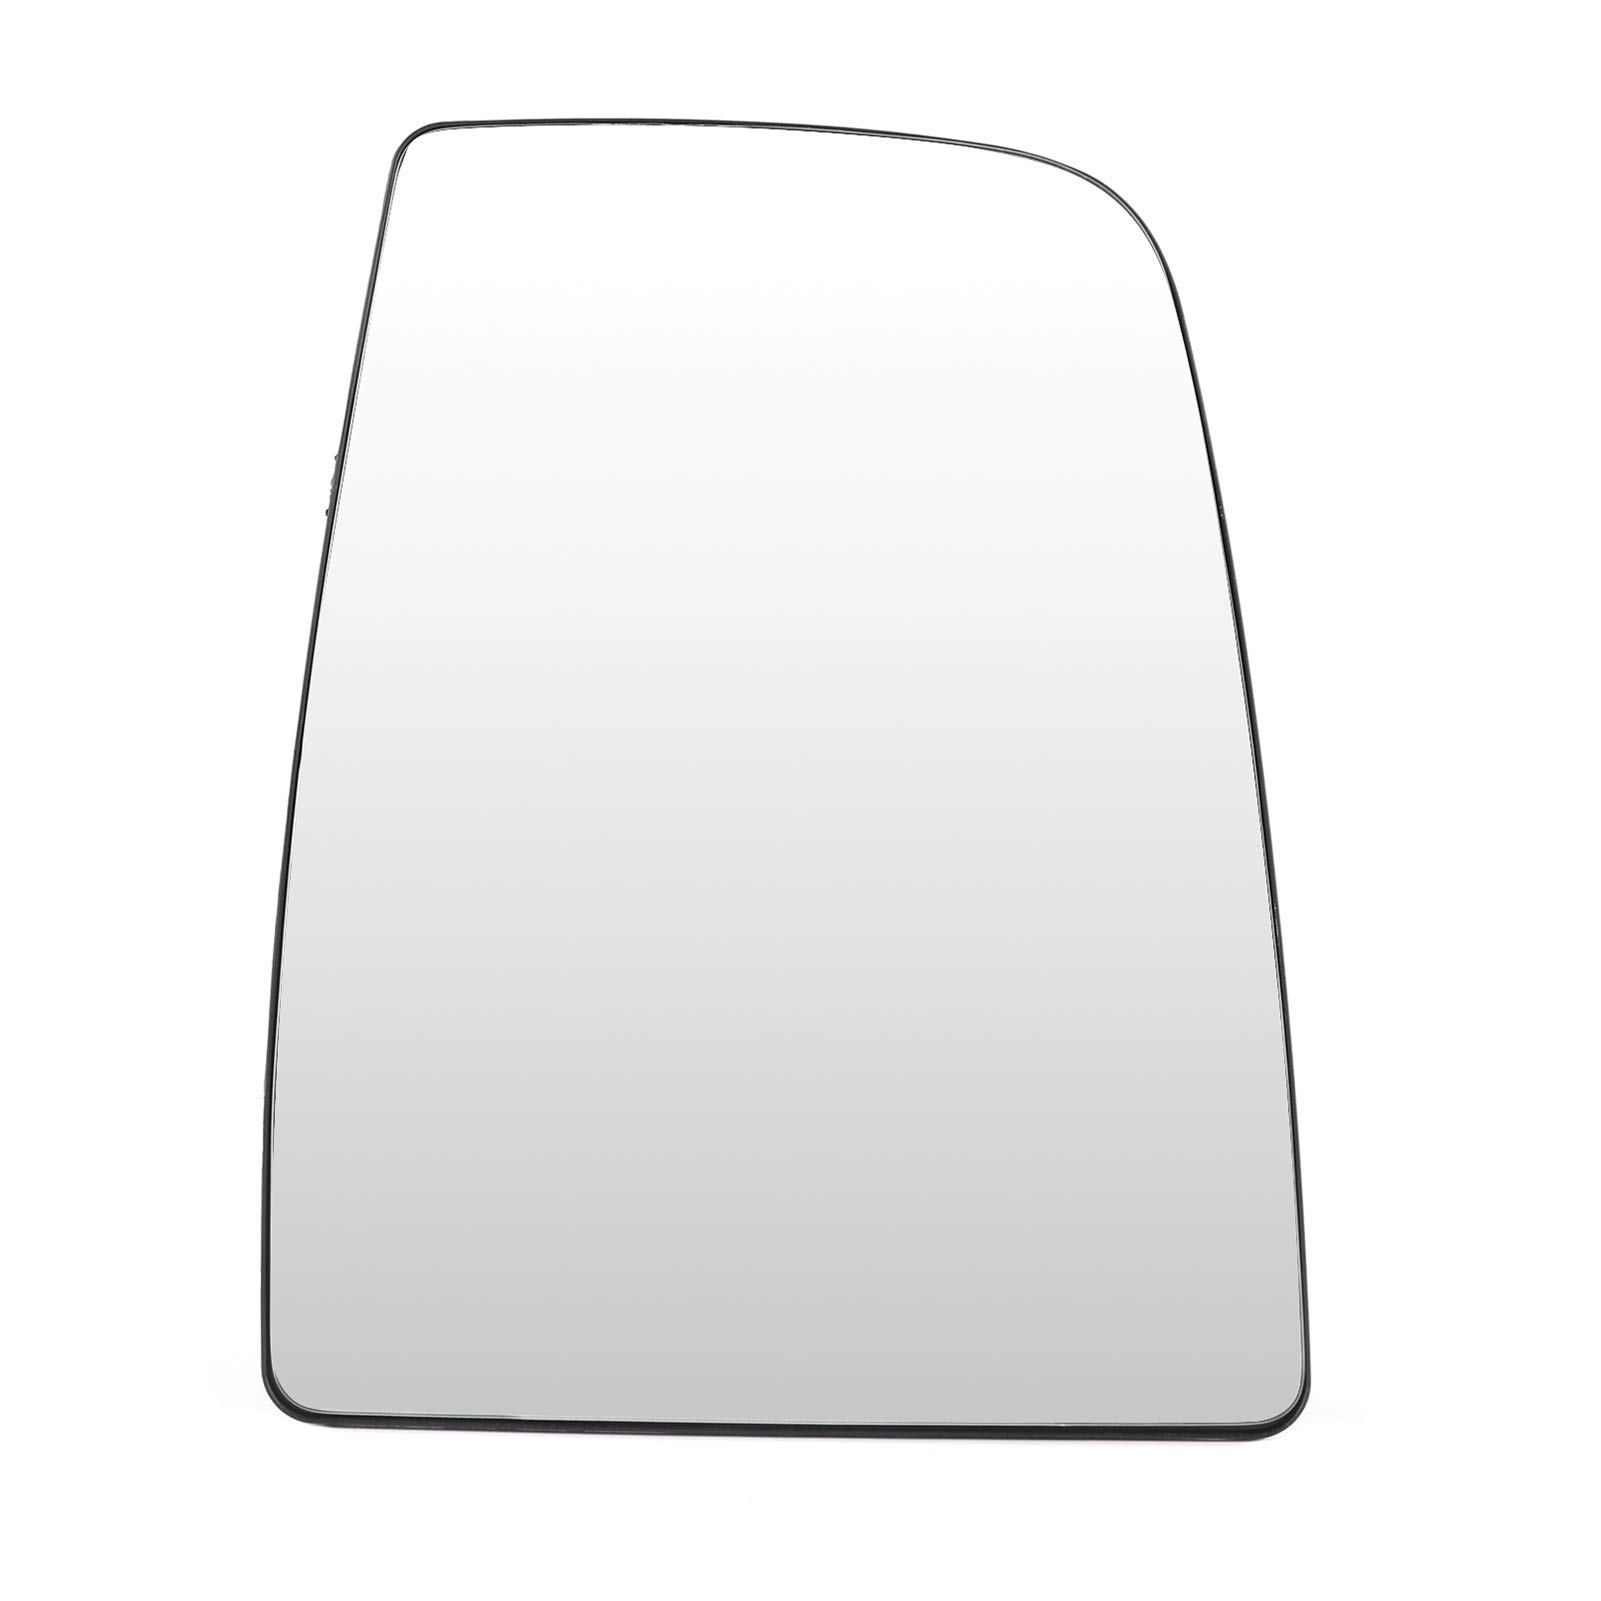 Flügel Spiegelglas auto custom, custom rechte spiegel rechts Seite Flügel Spiegelglas recht 1823994 Ersatz Passform für Transit MK8 2014-ON von Aramox